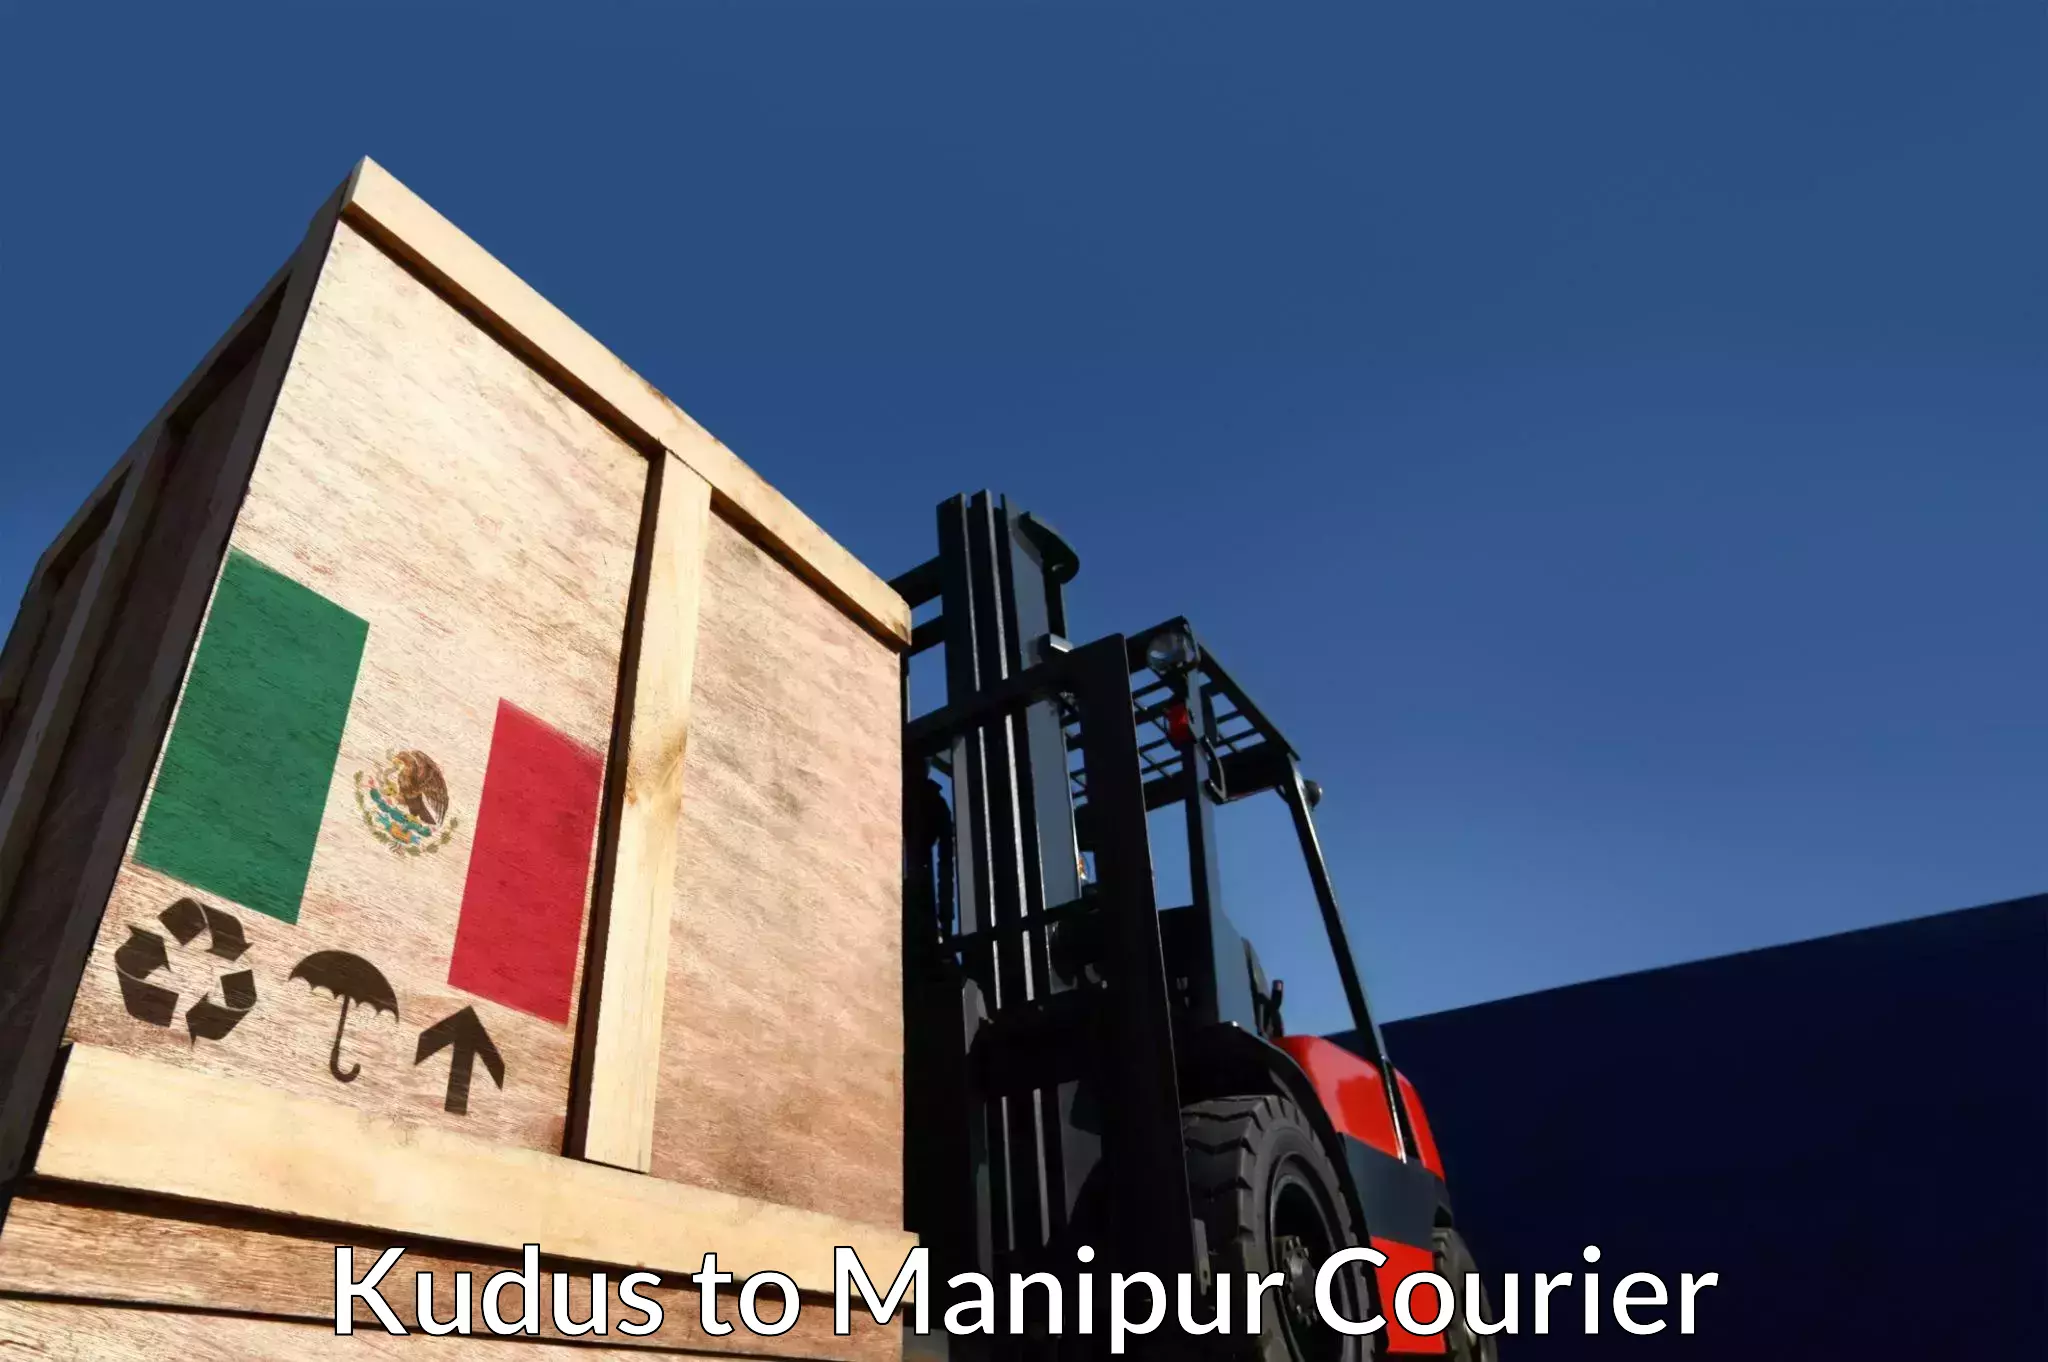 Courier service innovation Kudus to Senapati